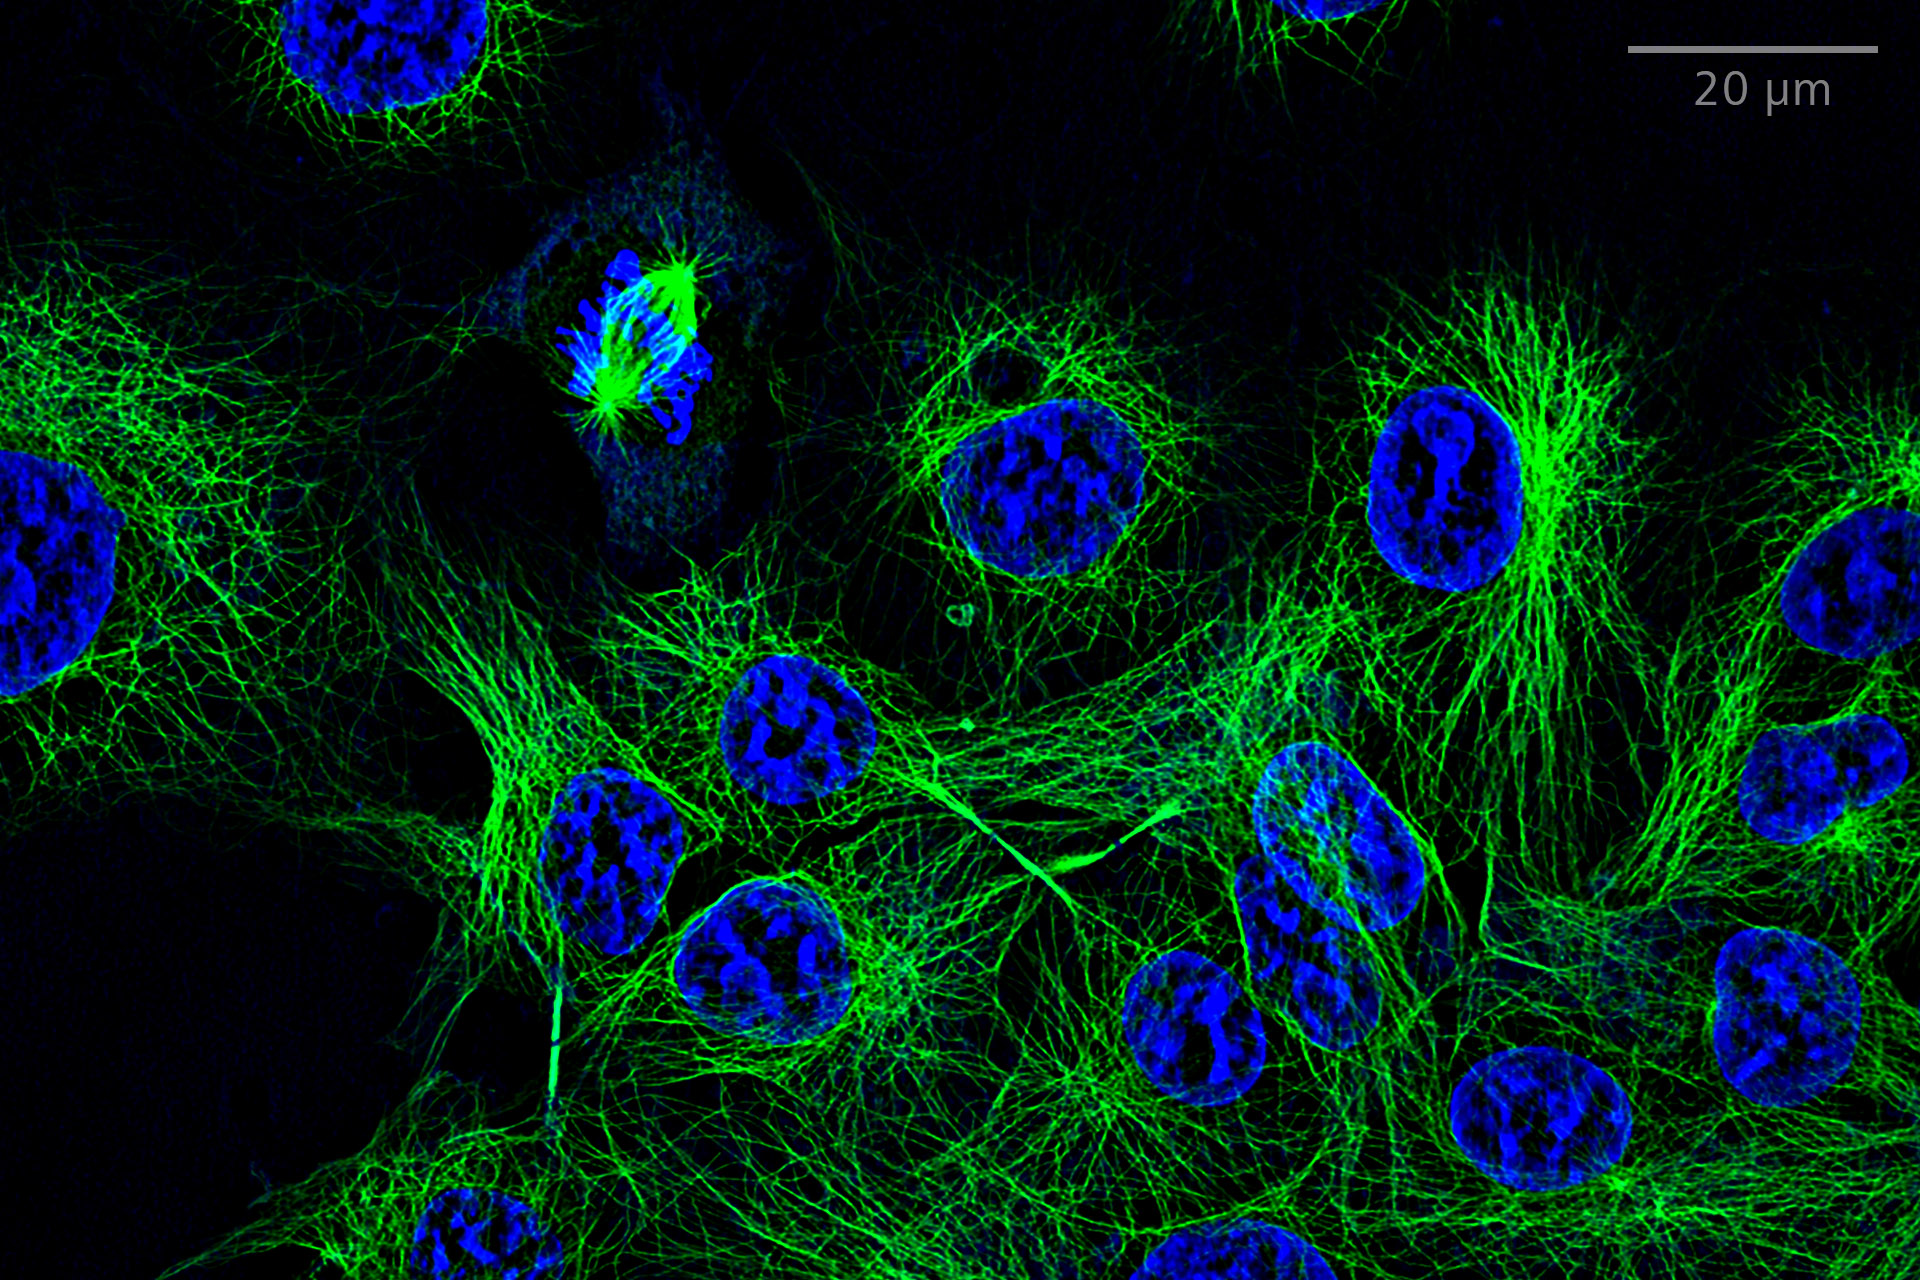 SIM² Apotome : Comparaison d'images en champ large et d'images planes SIM² Apotome de cellules COS-7 colorées pour les microtubules (anti-alpha-tubuline Alexa Fluor 488, vert) et les noyaux (Hoechst, bleu). Objectif : LD LCI Plan-Apochromat 25× / 0,8 Imm Corr.